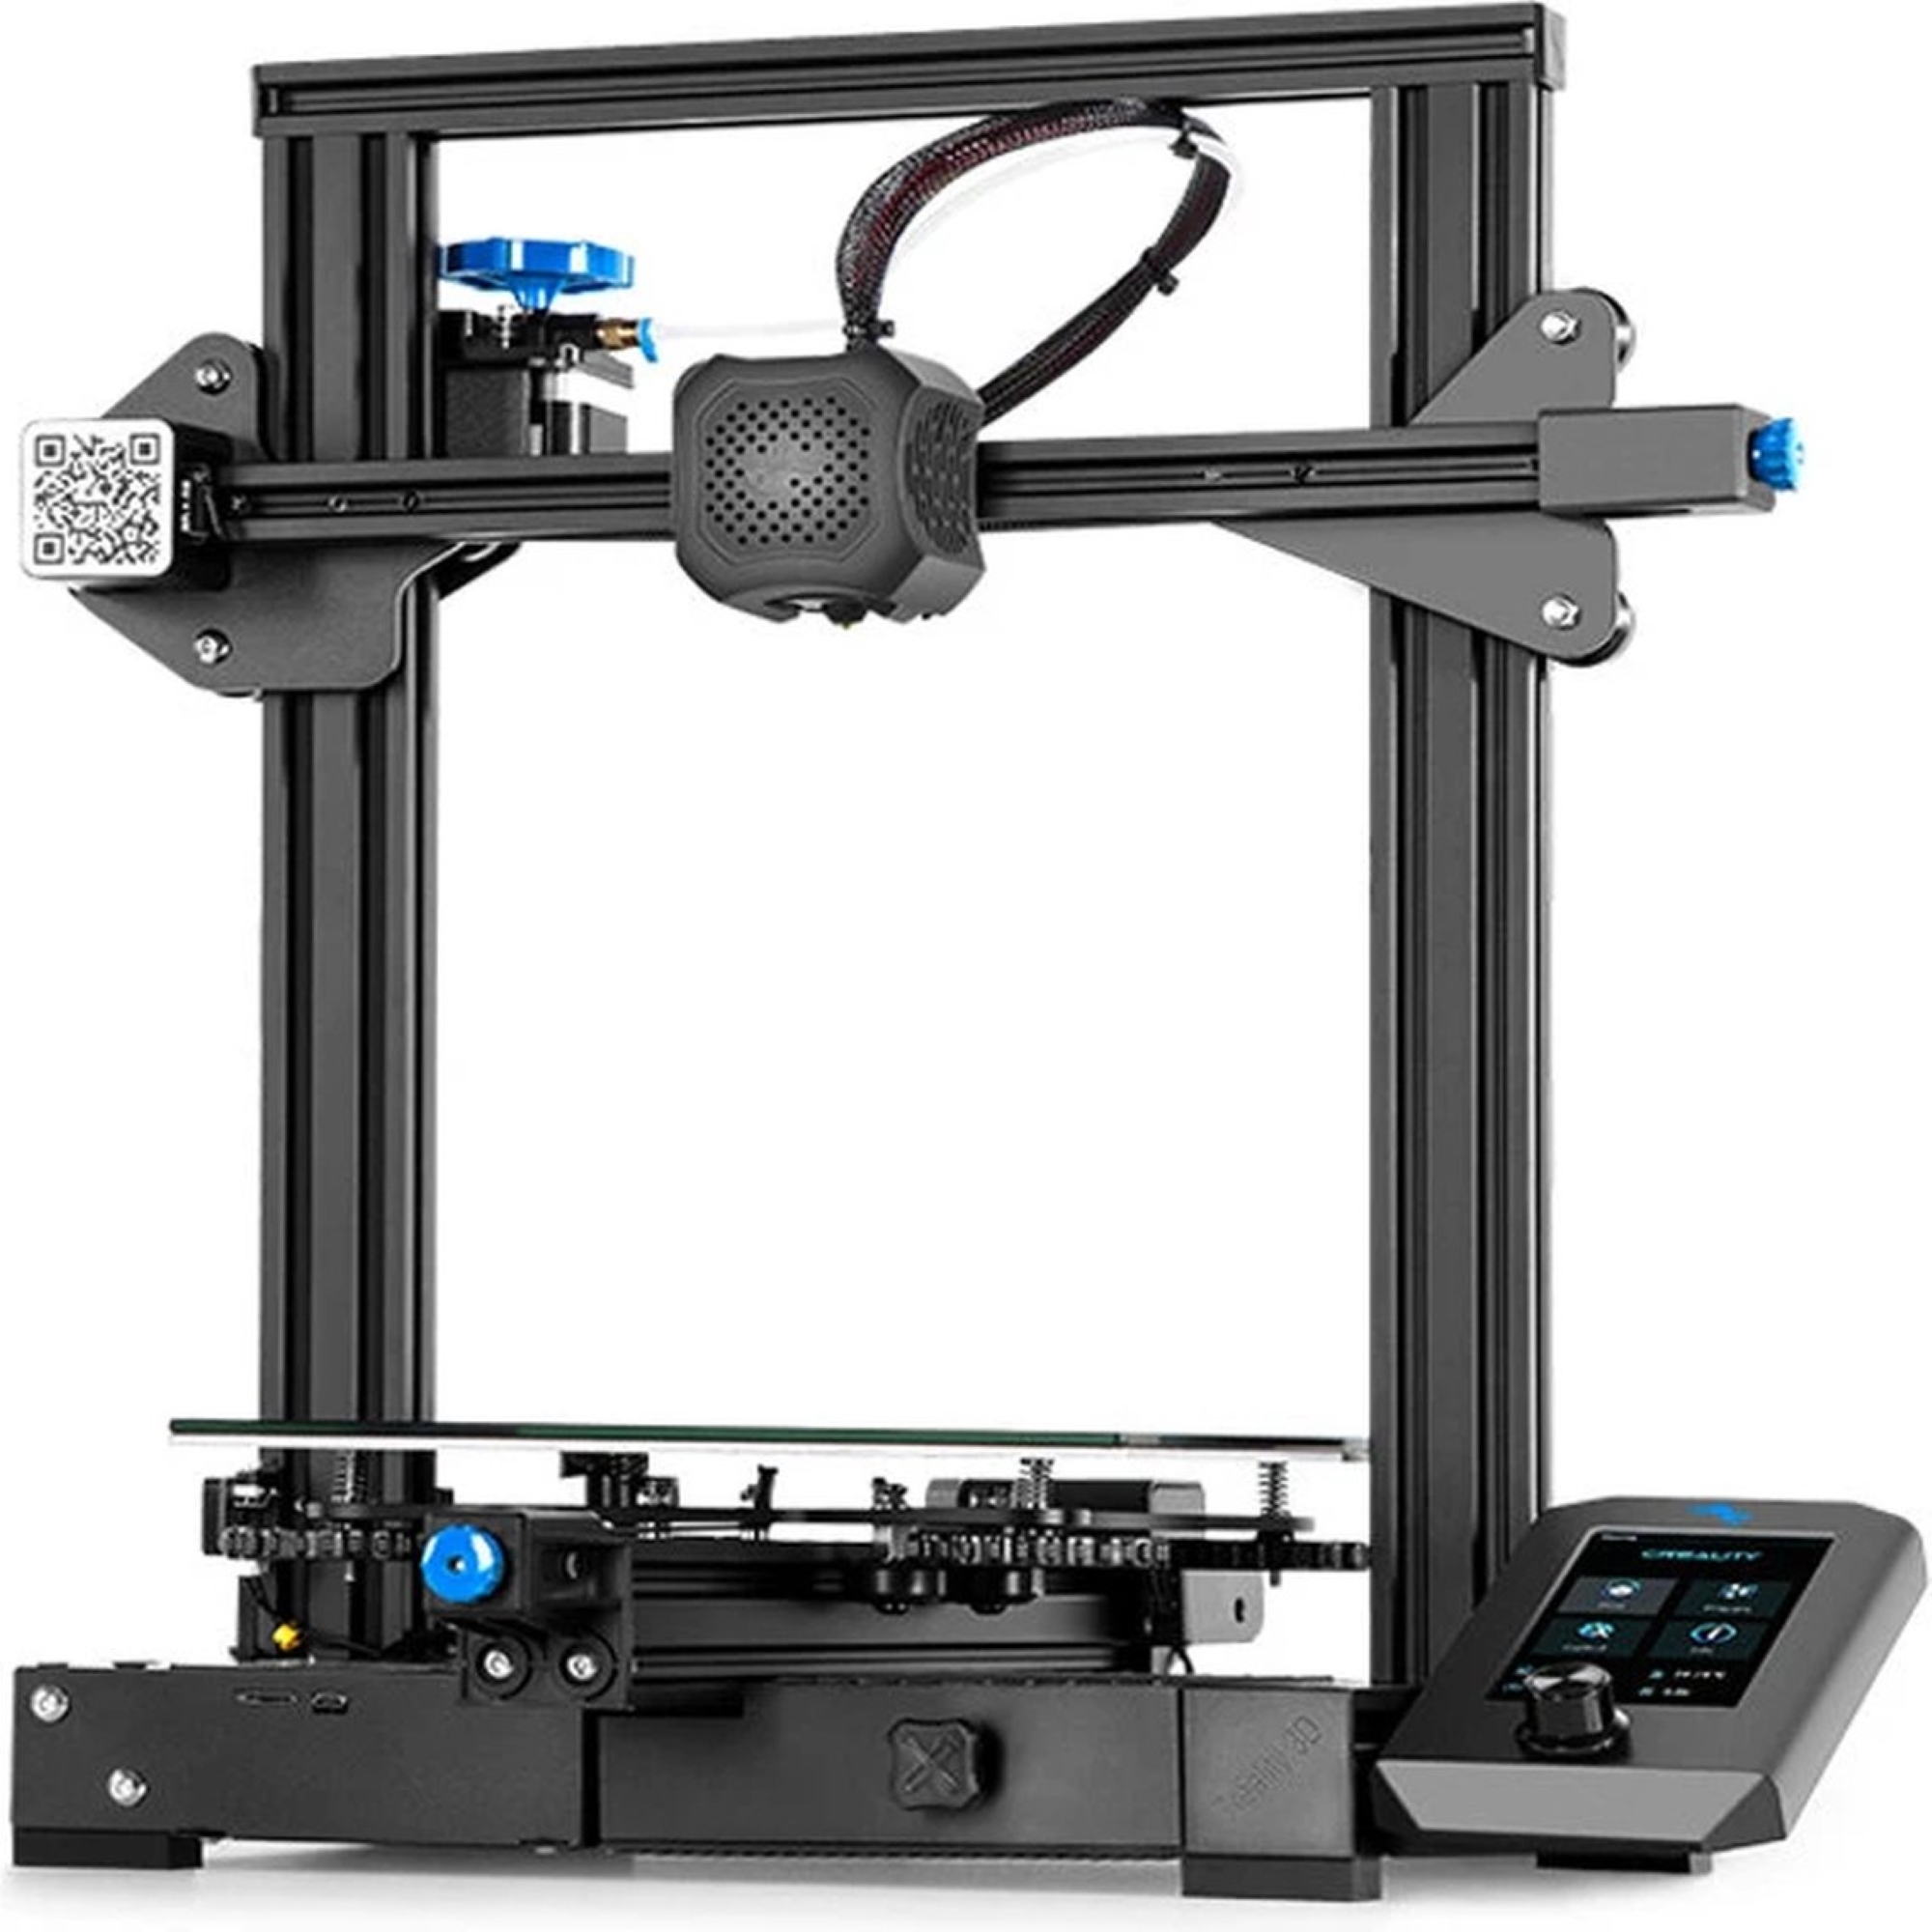 CREALITY 3D 3D V2 3 Ender Printer Drucker FDM